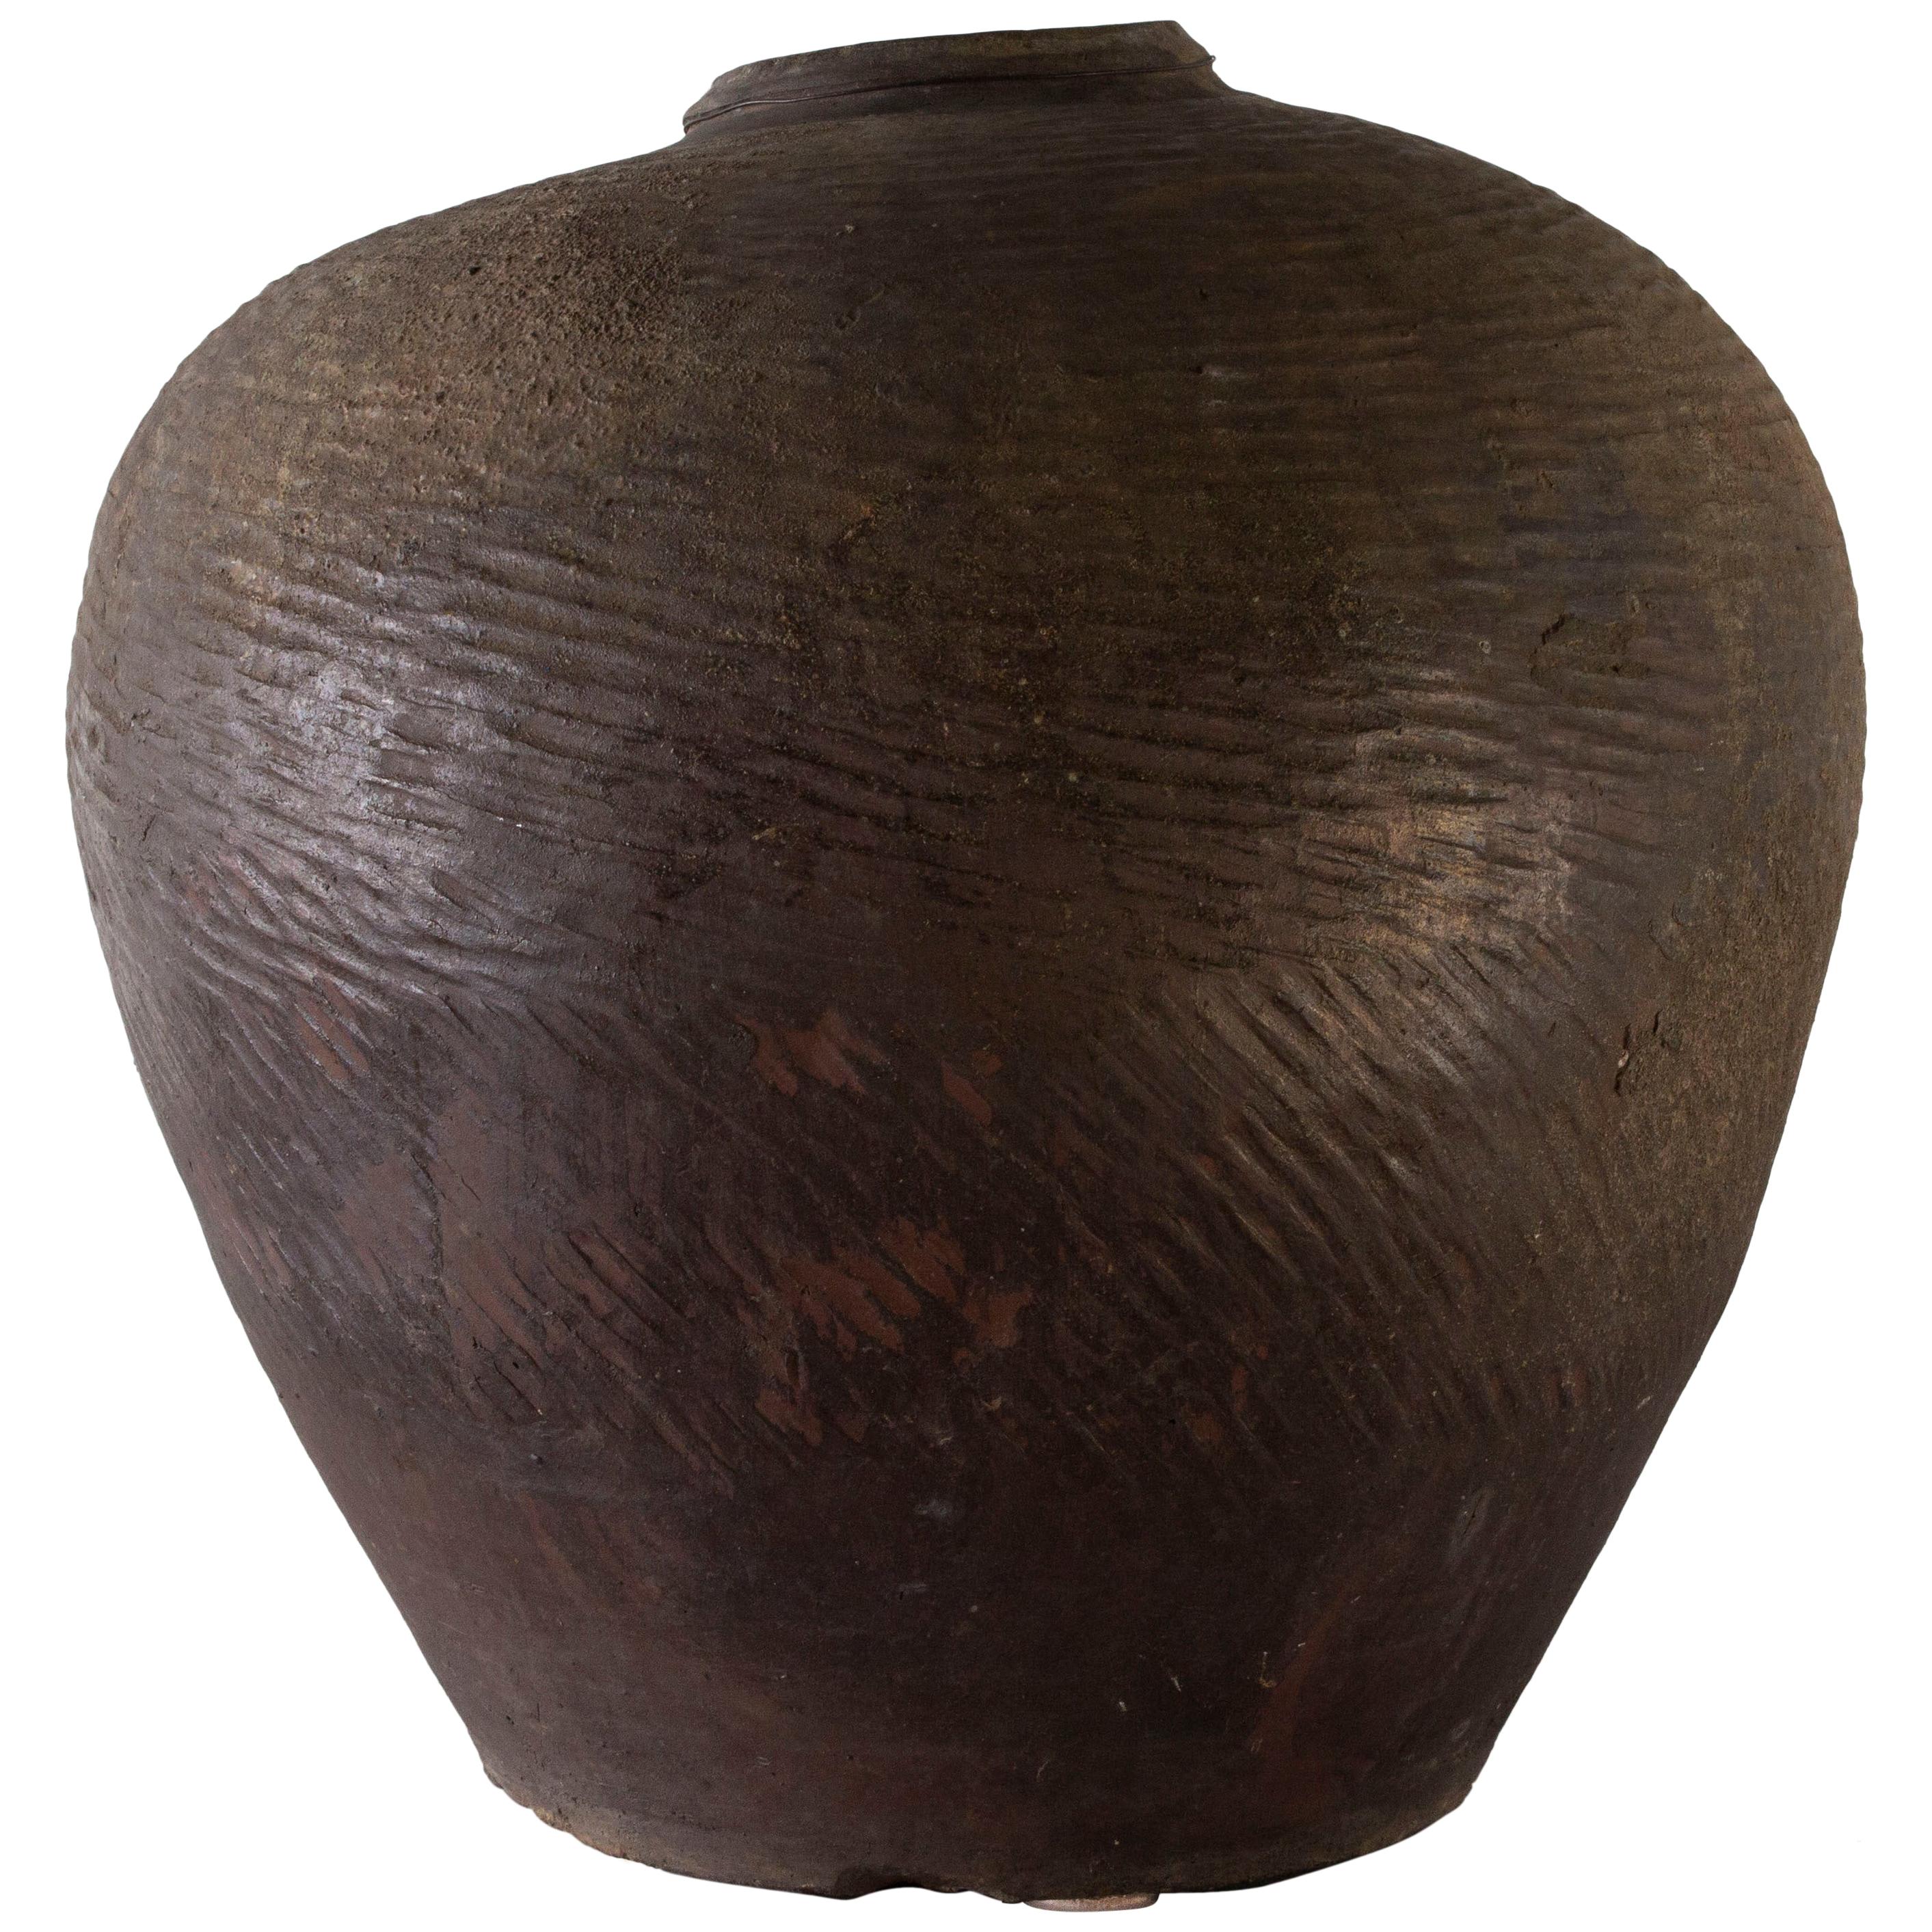 Antique Terracotta Storage Jar